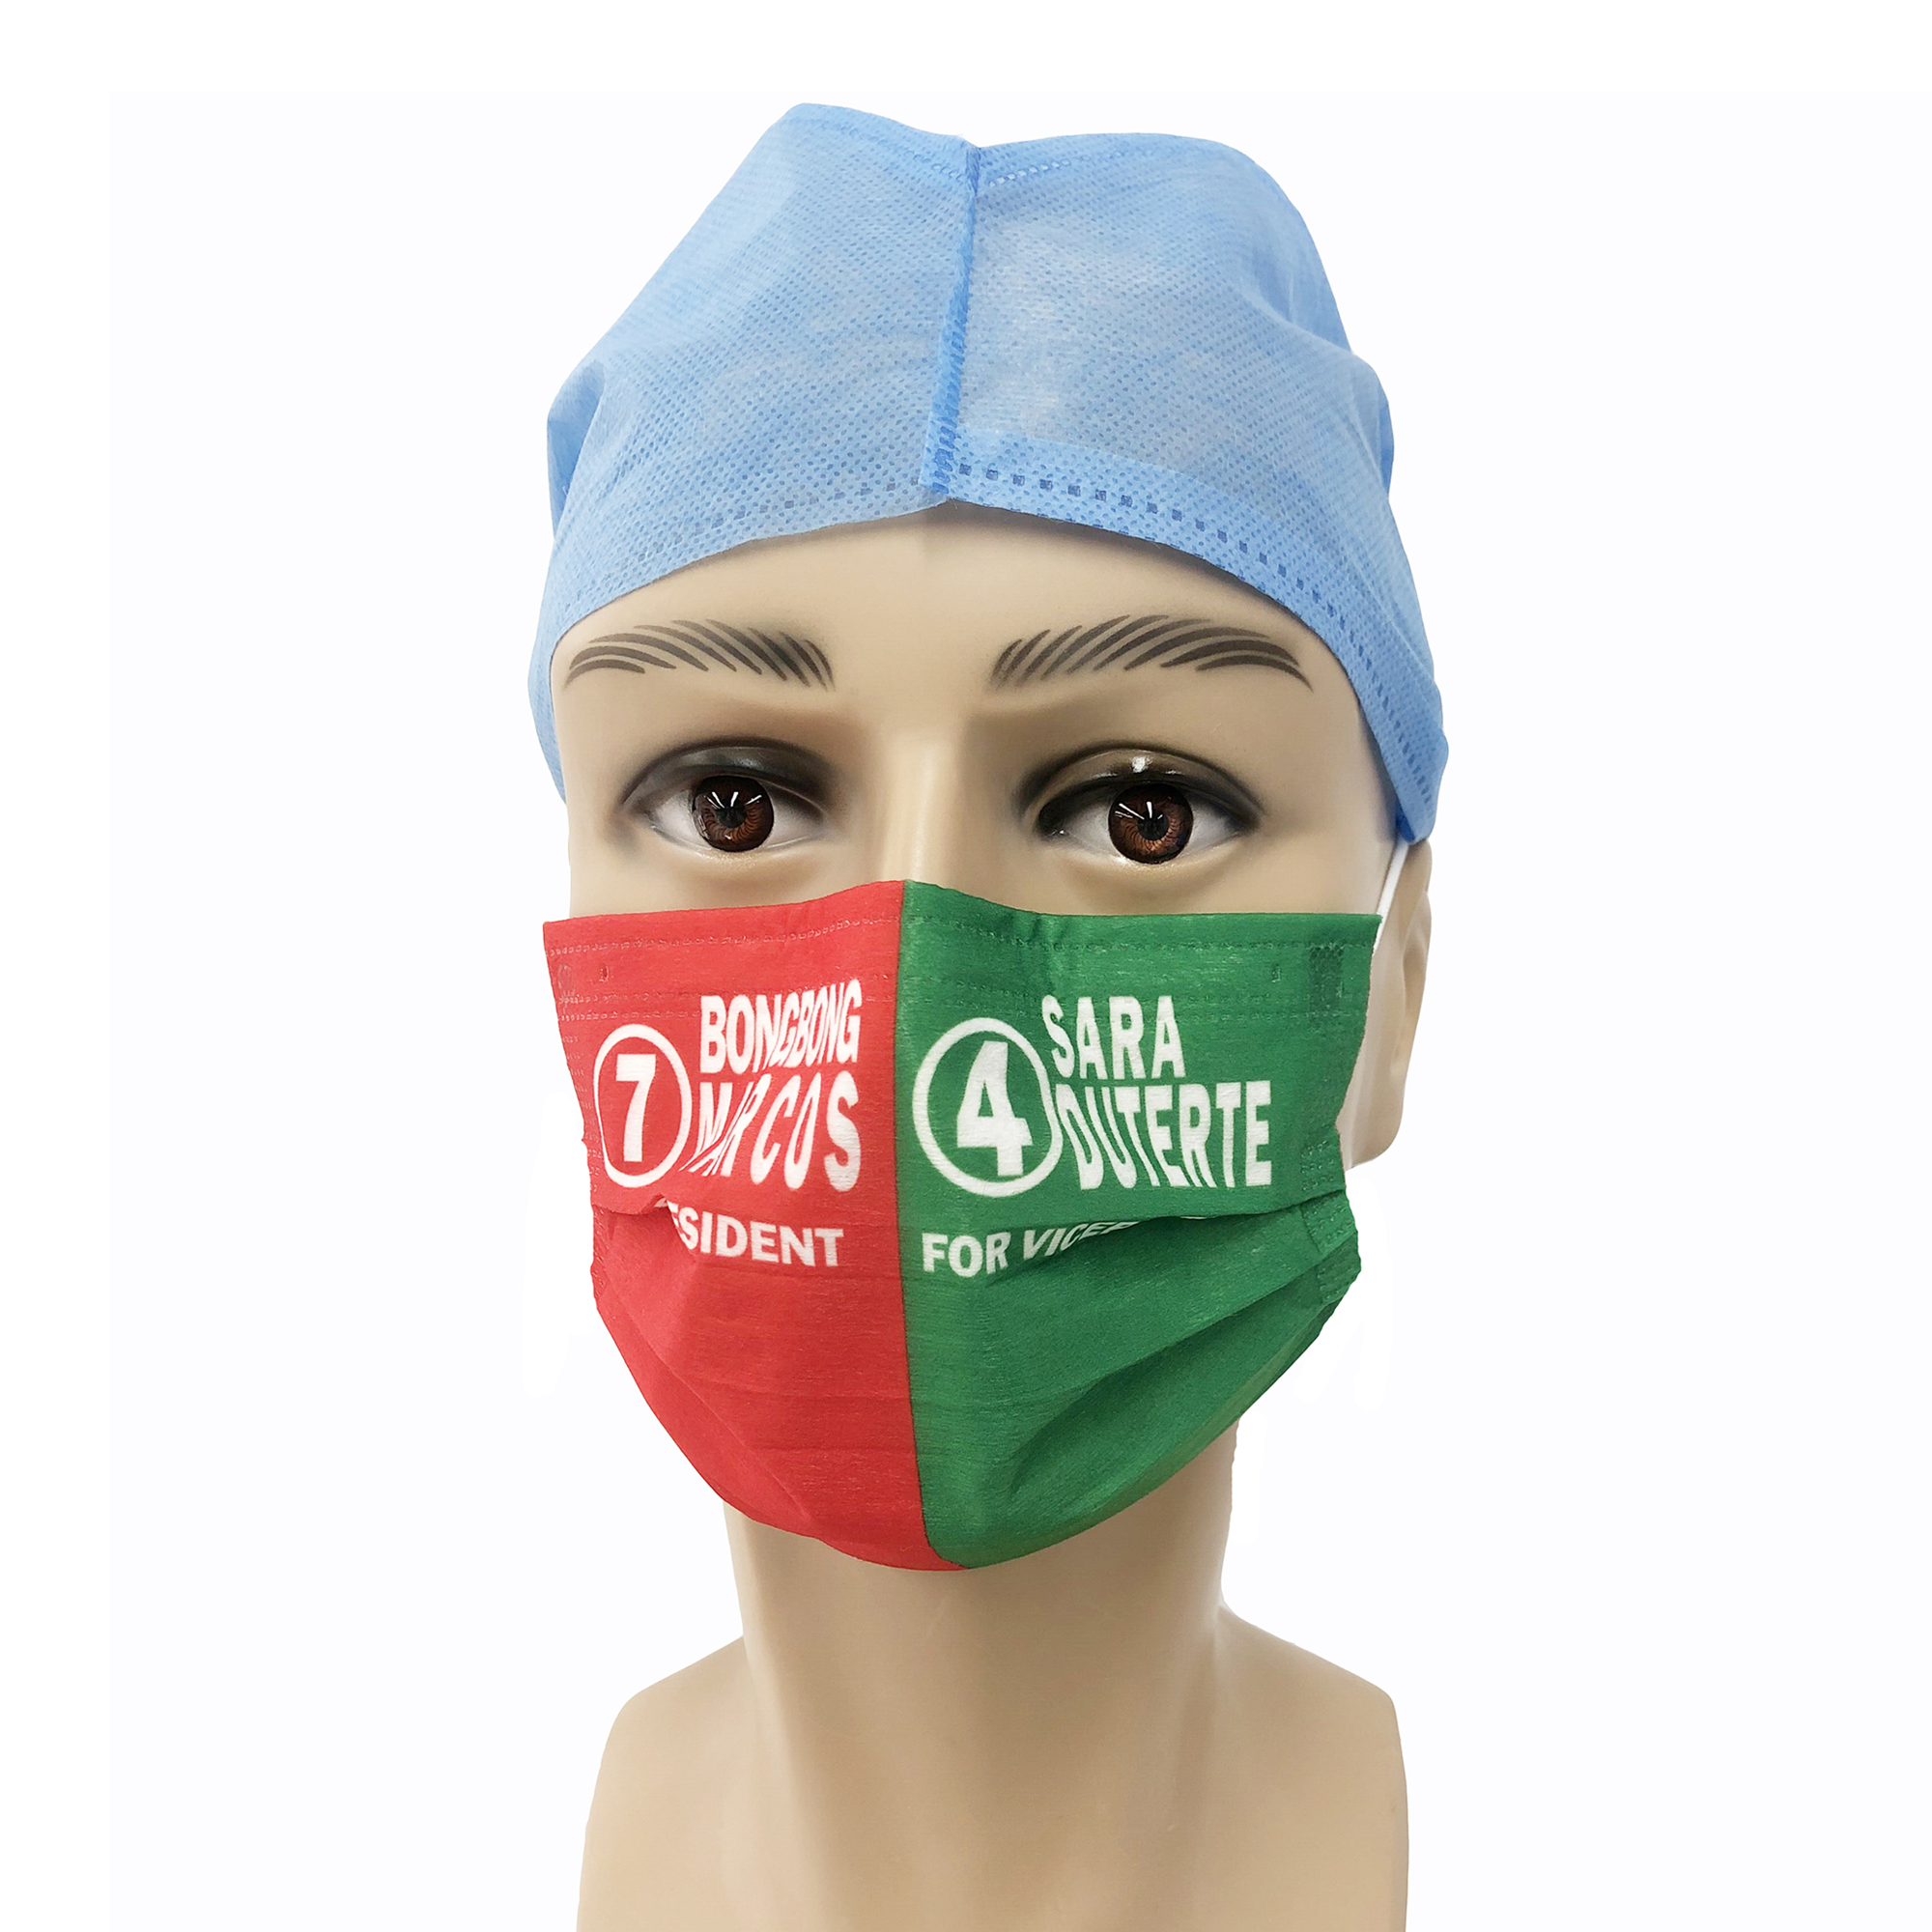 Одноразовые медицинские маски для лица TypeIIR EN14683